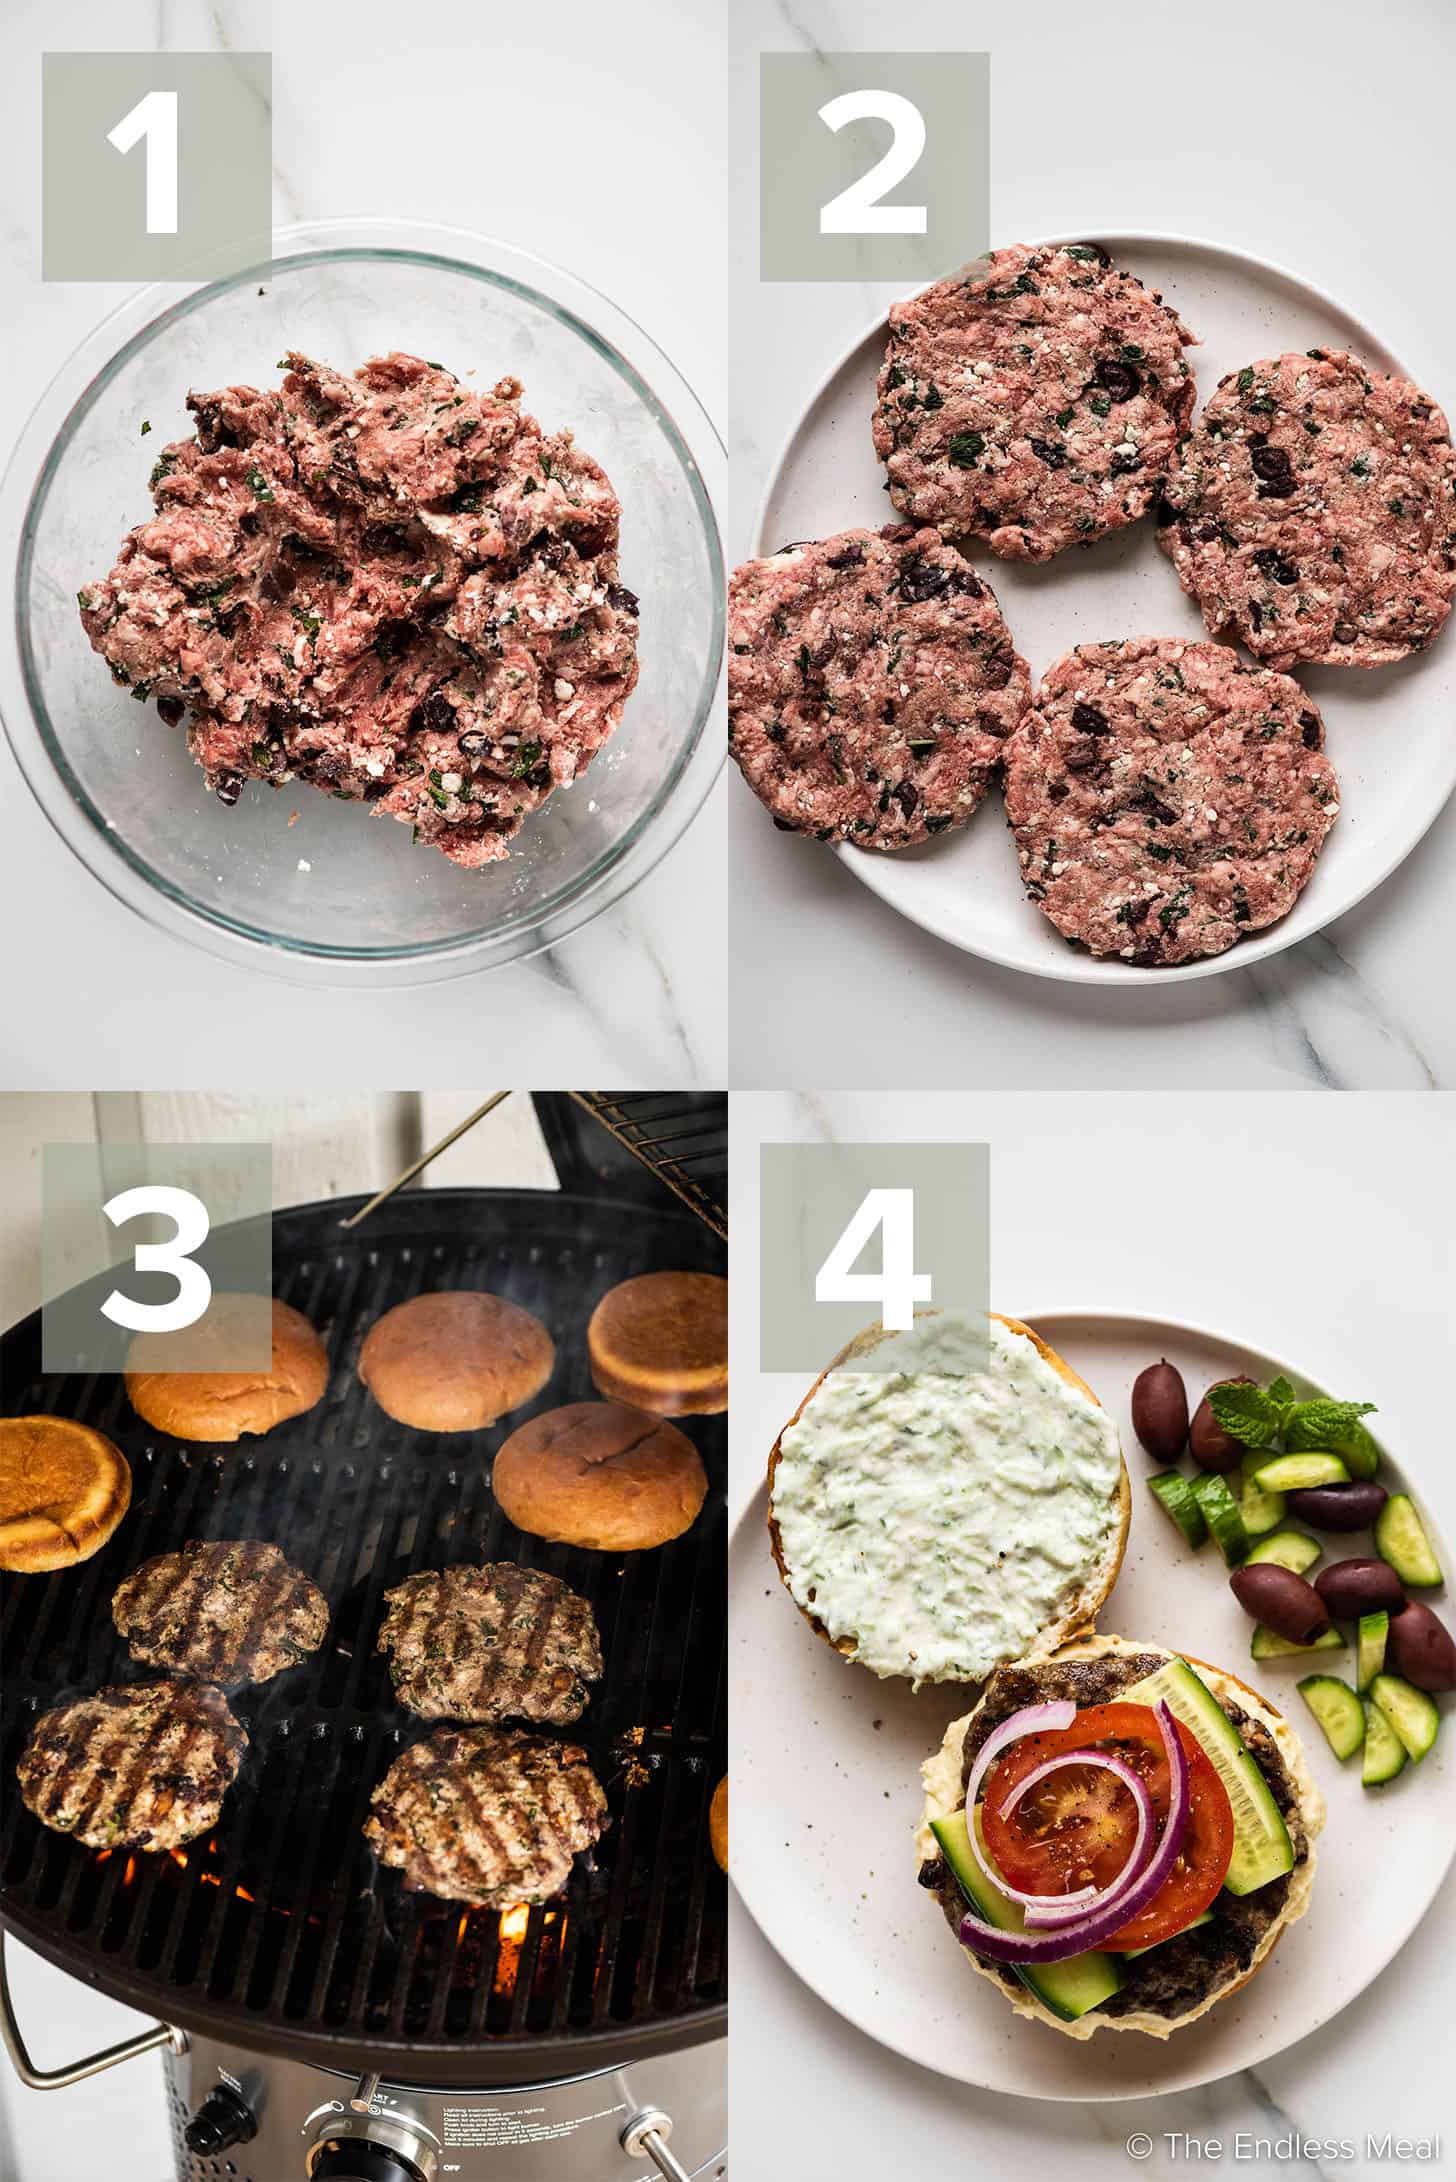 4 immagini che mostrano come preparare questa ricetta per l'hamburger di agnello